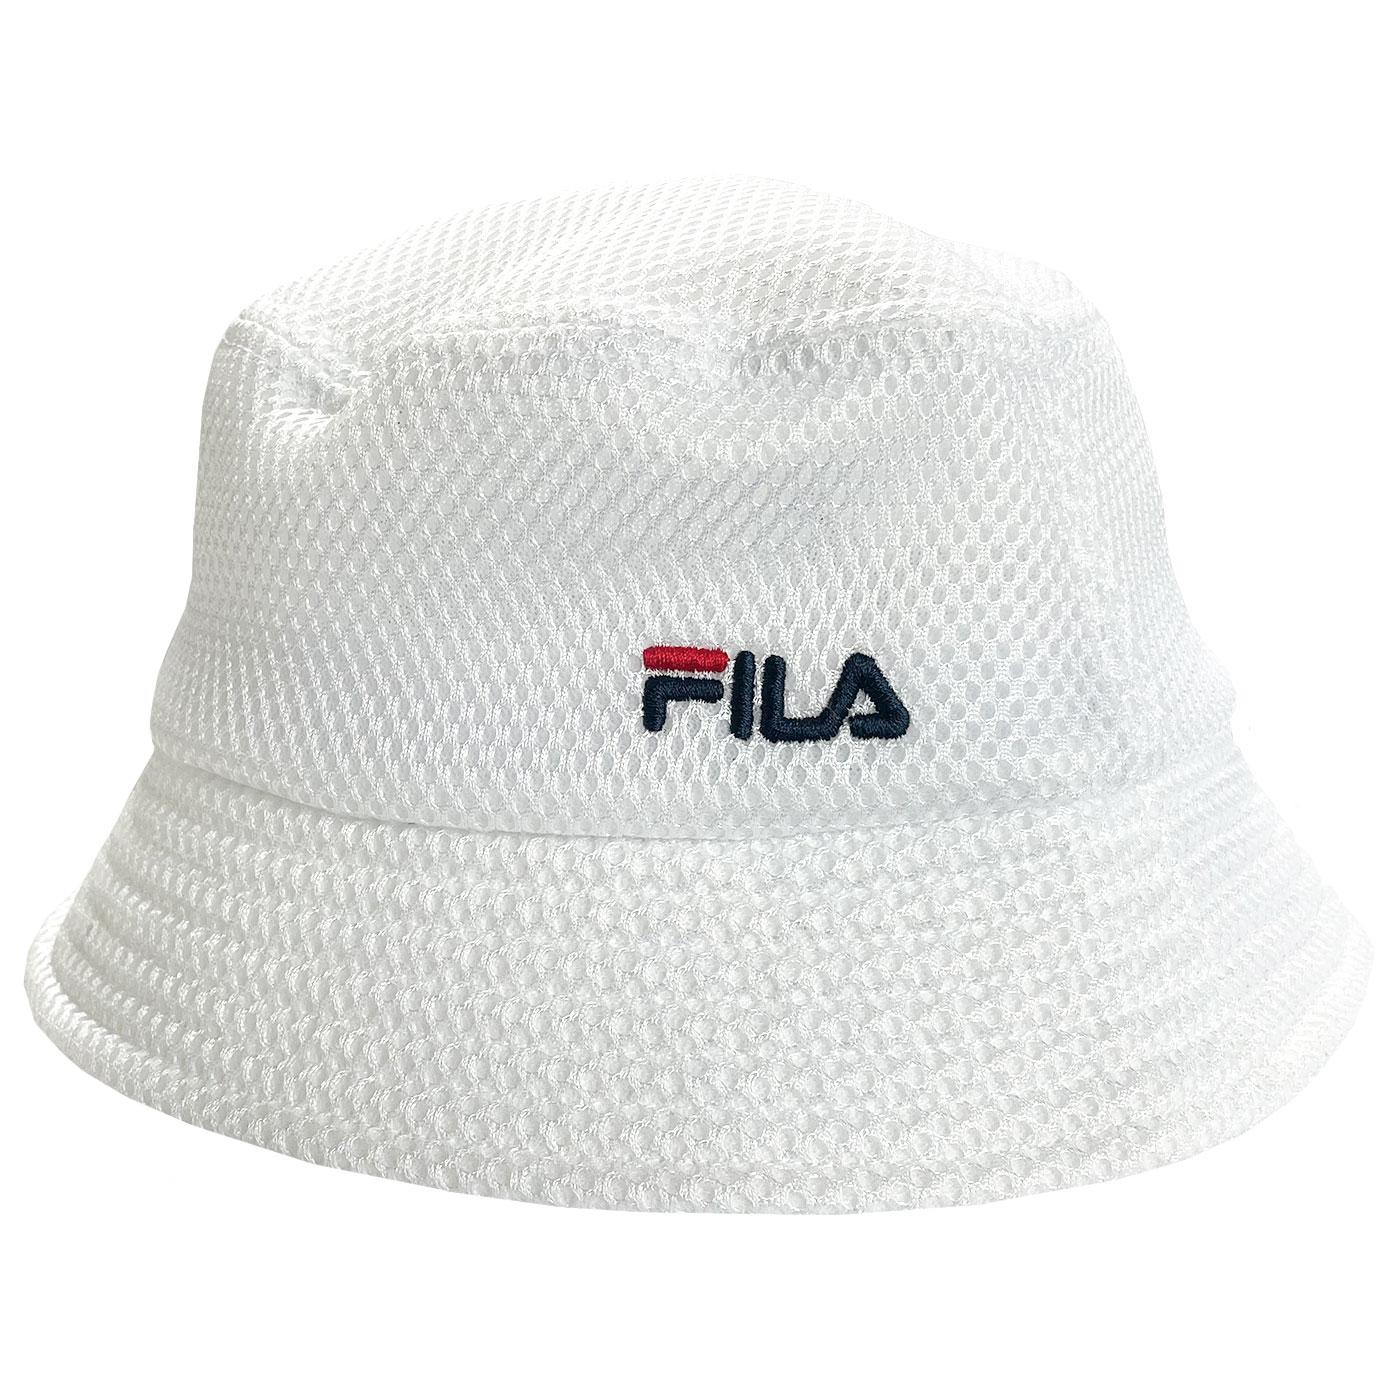 Yammy FILA VINTAGE 90s Retro Mesh Bucket Hat (W)